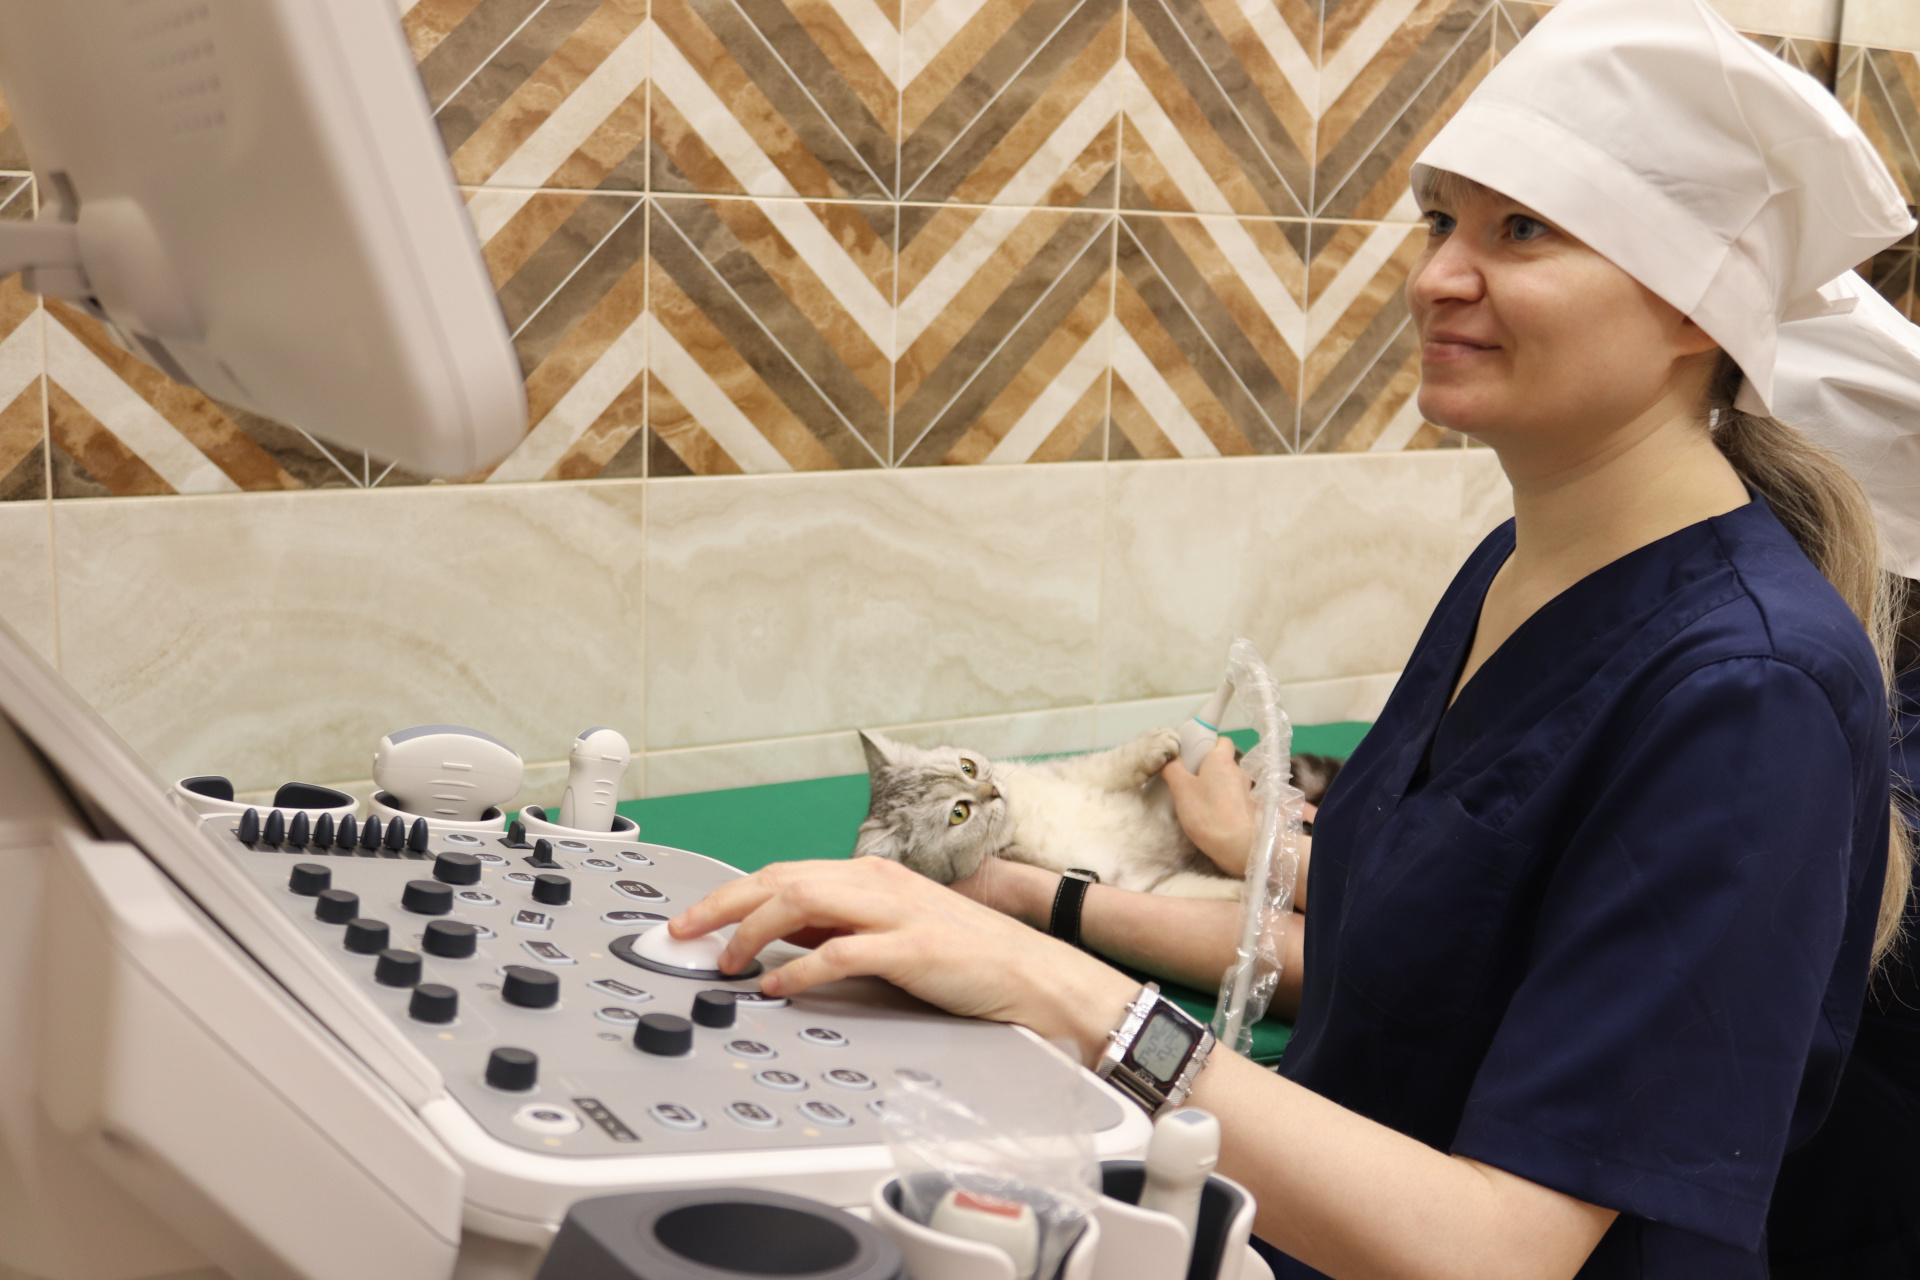 Более 500 обращений за ветеринарной помощью зарегистрировано поликлиникой «Добровет» по итогам работы в первом месяце текущего года